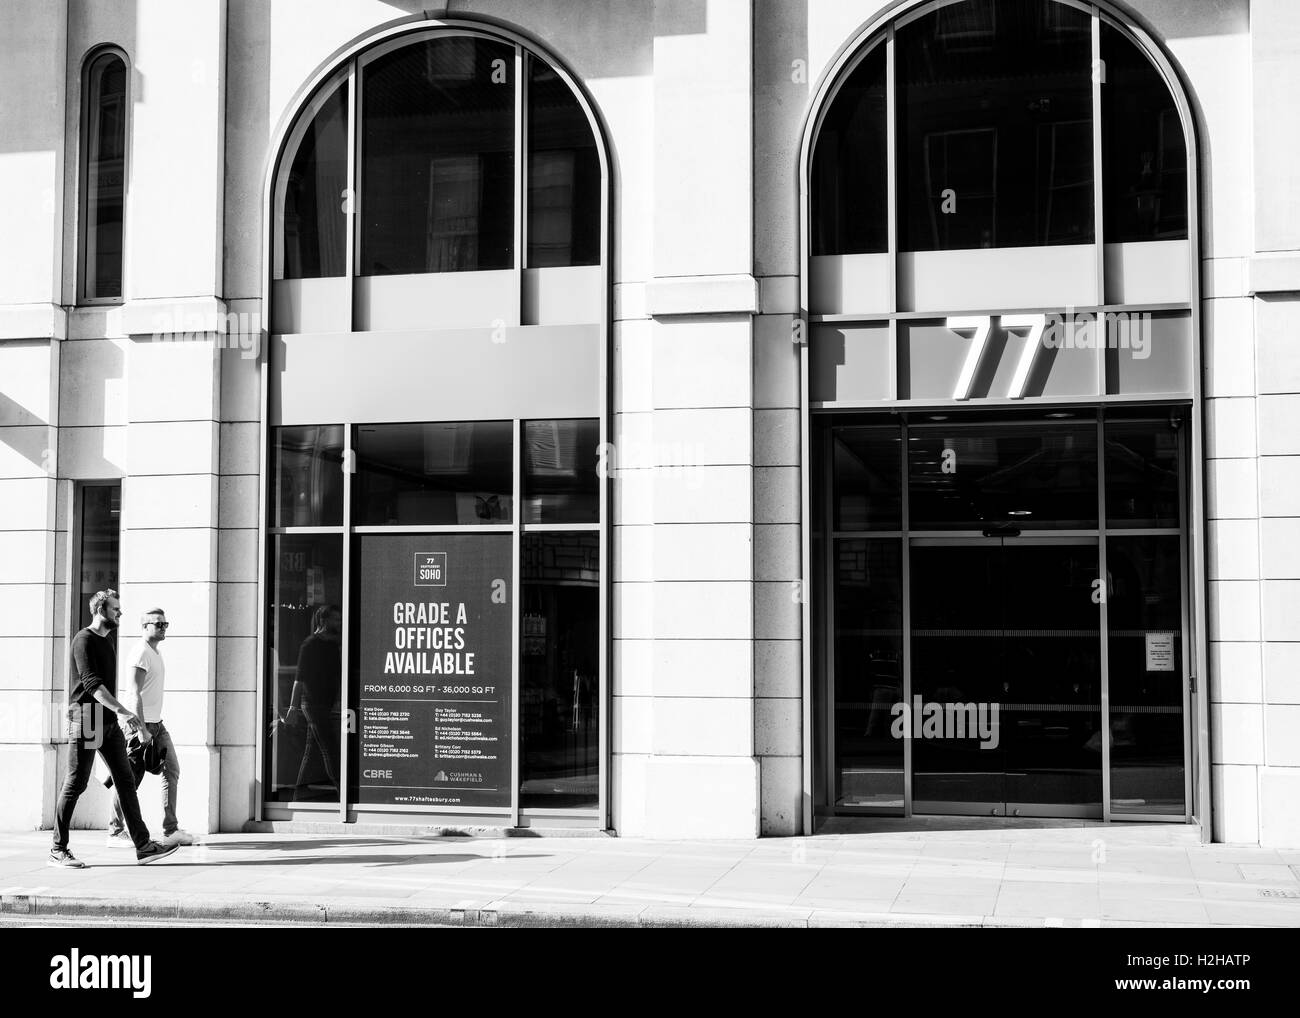 Deux jeunes hommes marchant sur le trottoir en face d'un bâtiment avec de grandes fenêtres et de panneaux la promotion de grade A offices Banque D'Images